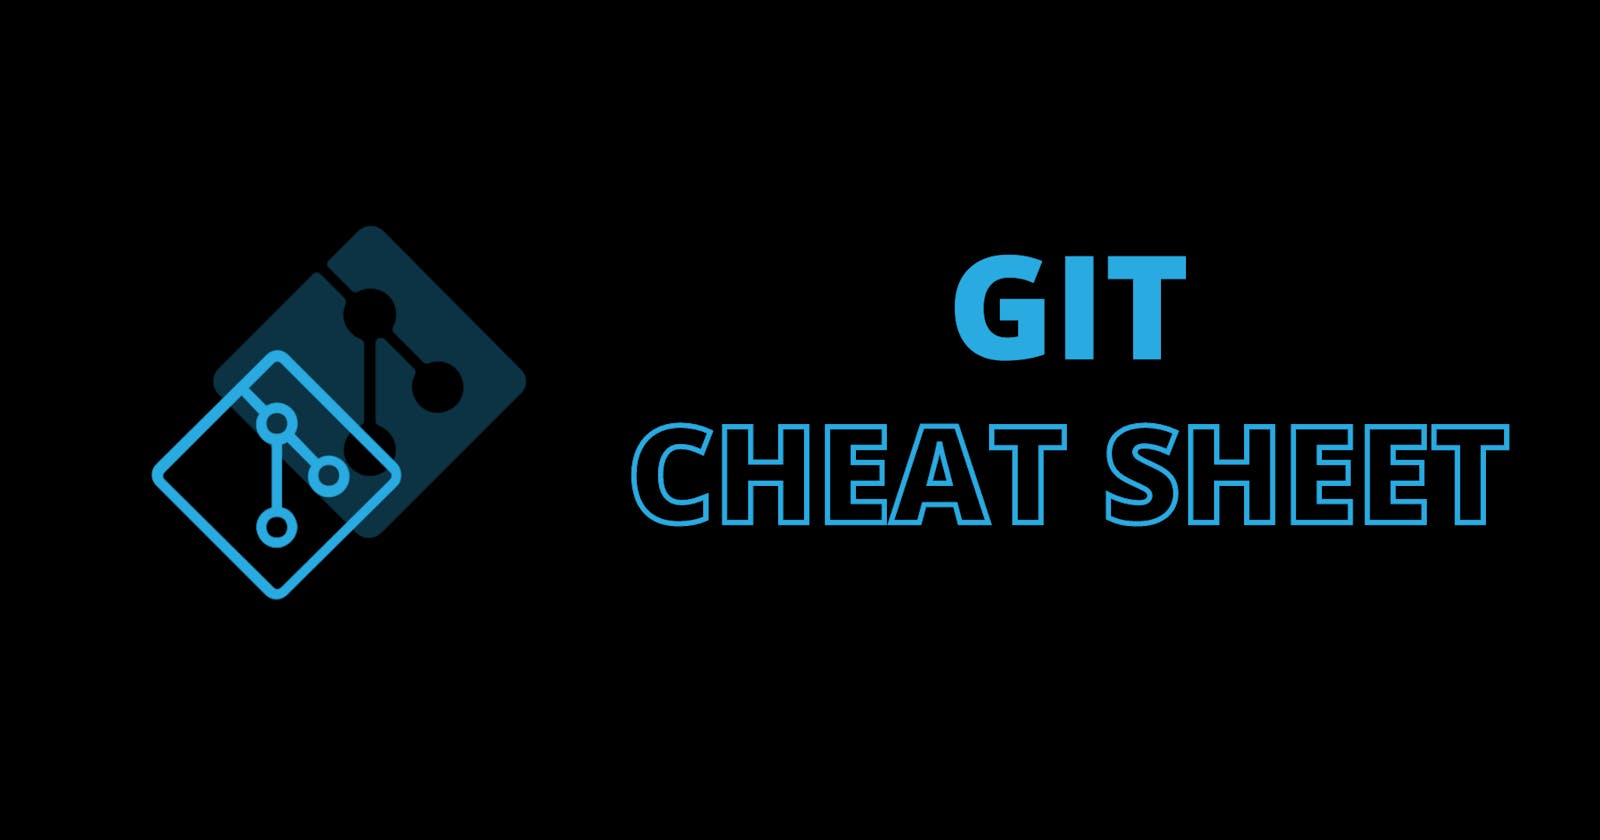 Developer's guide to GIT.